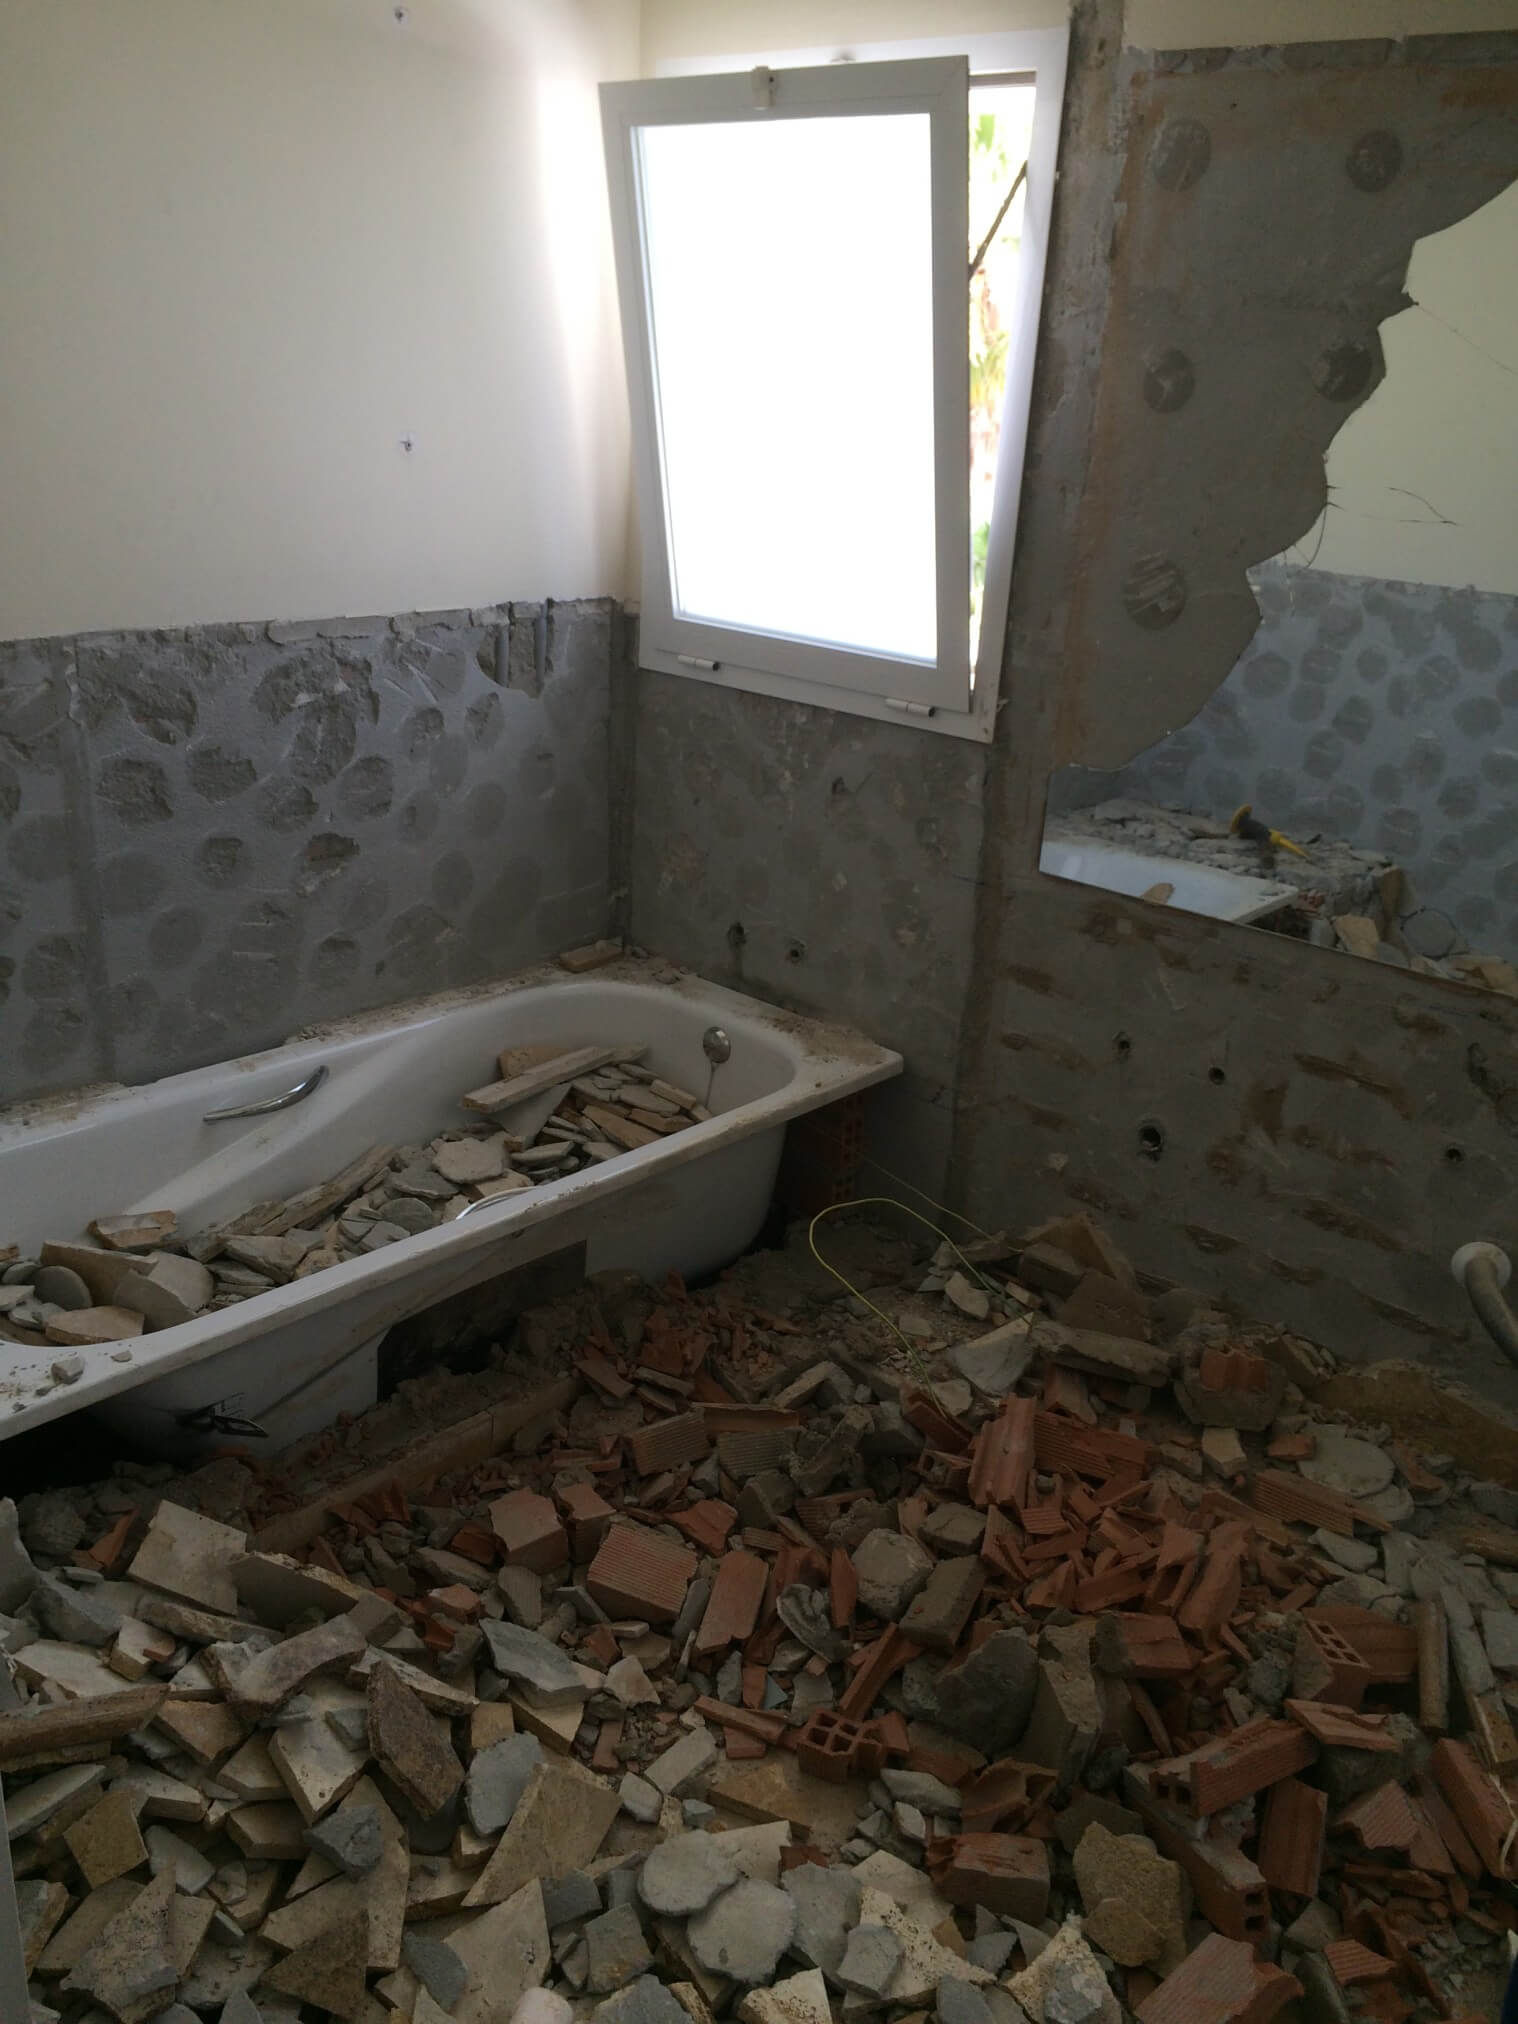 Demolished bathroom